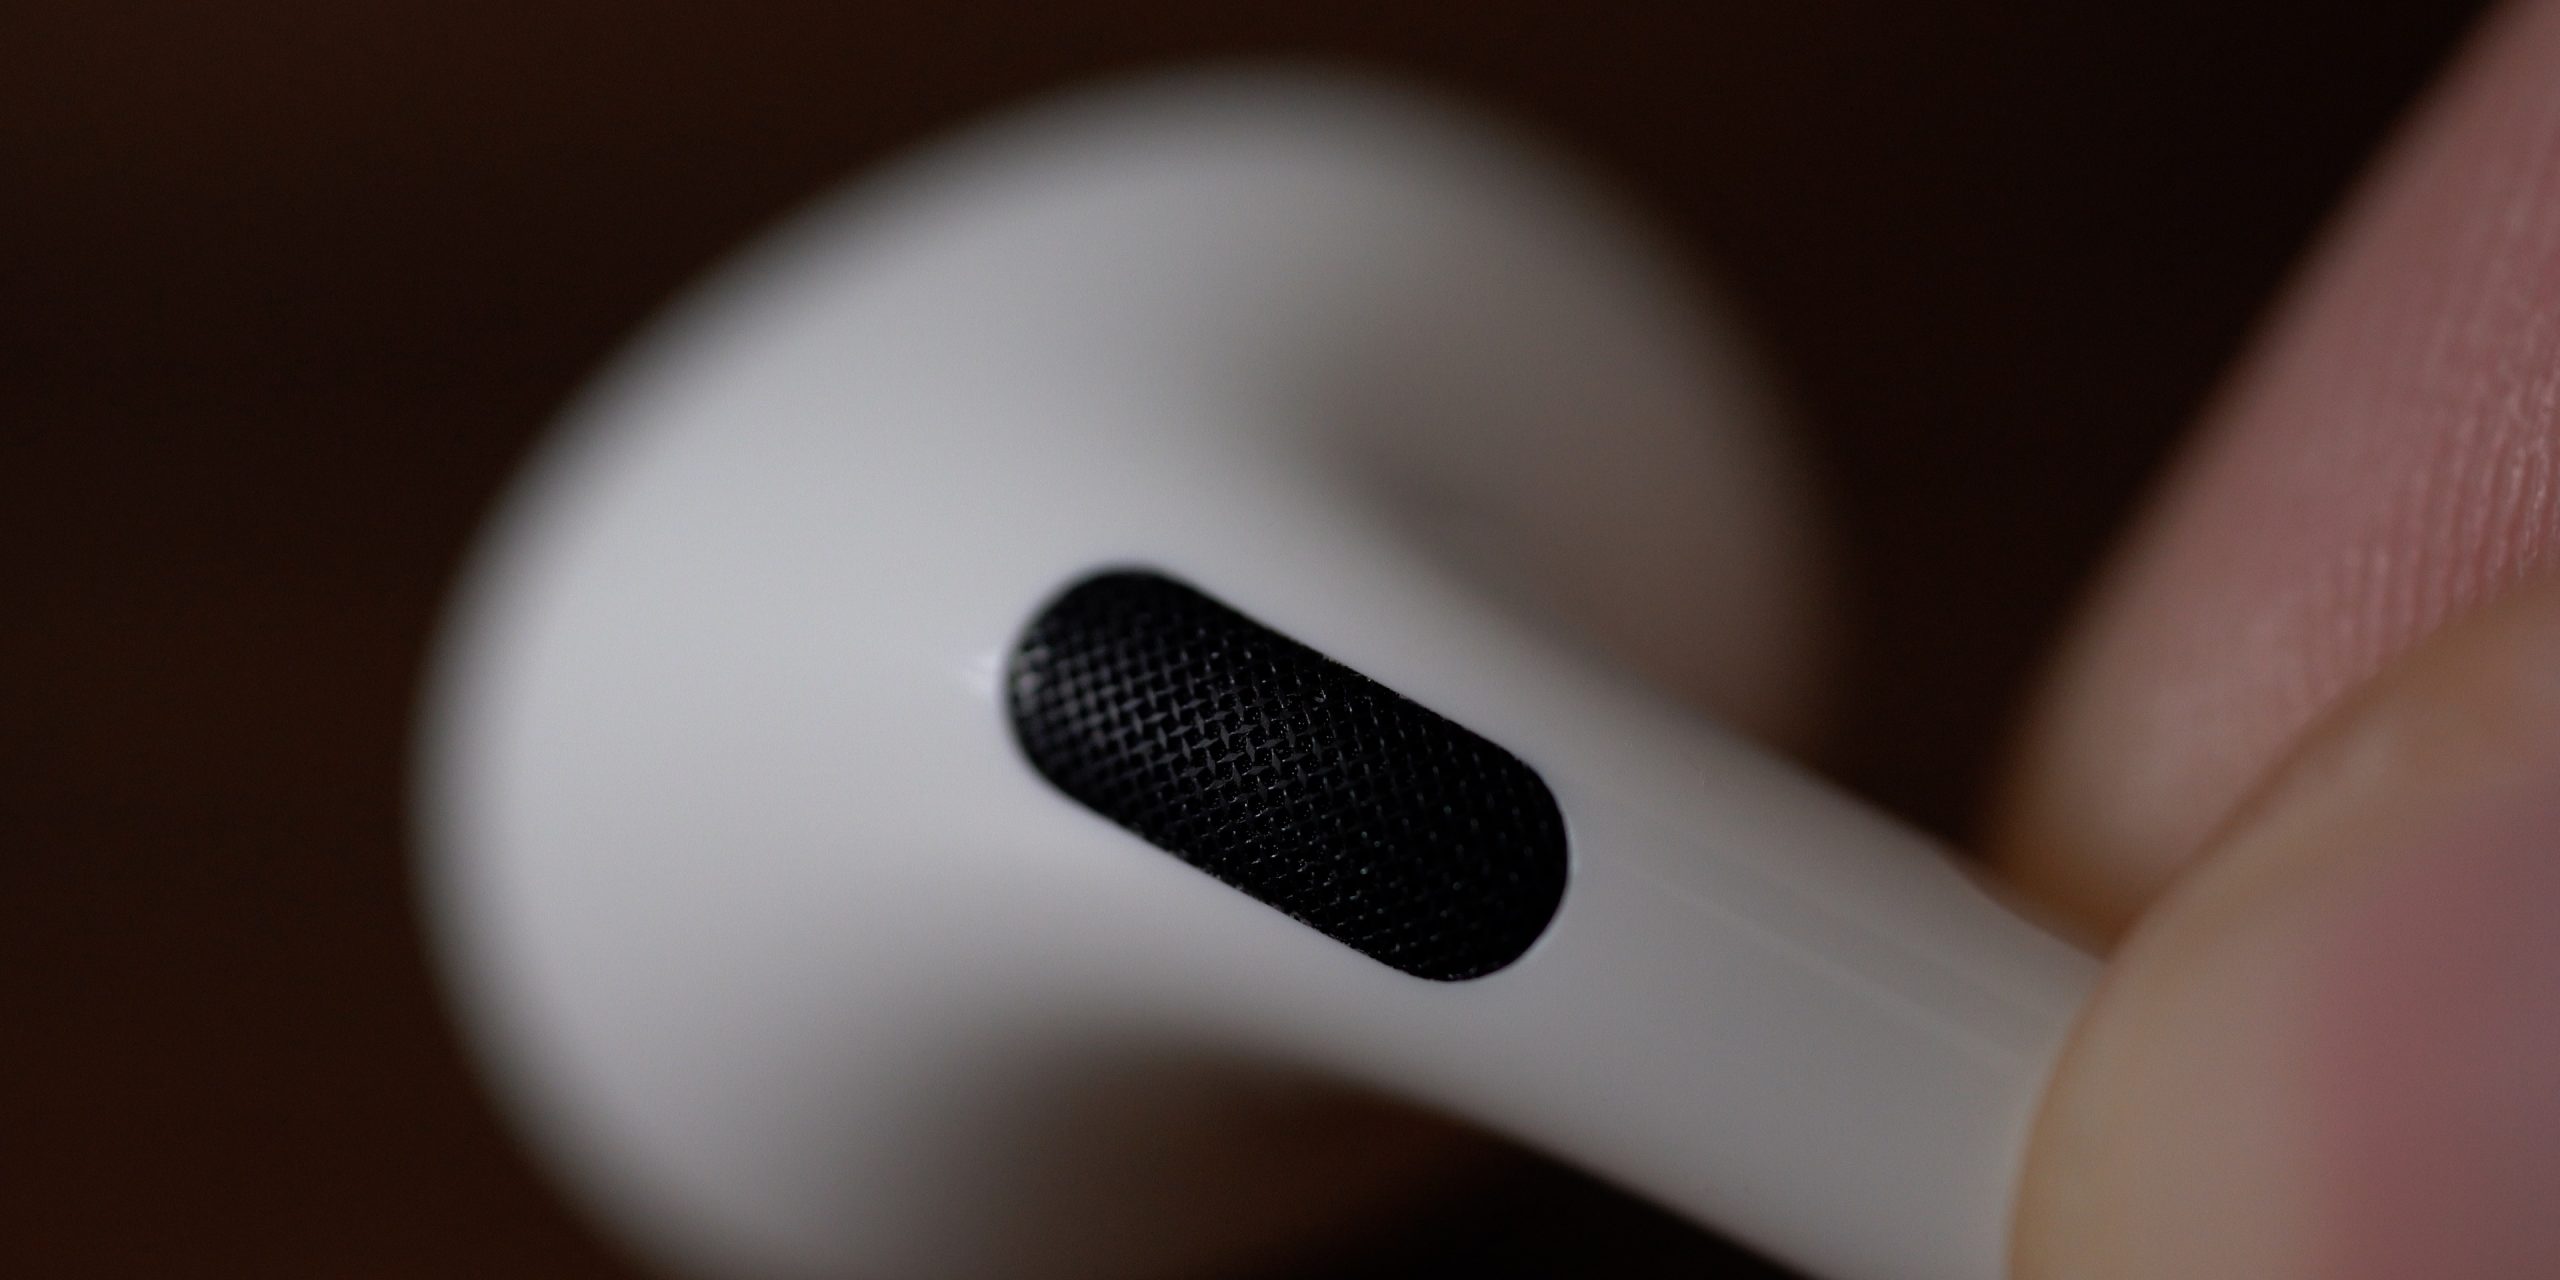 iOS 16 sẽ có thể giúp bạn kiểm tra và xác định tai nghe AirPods giả